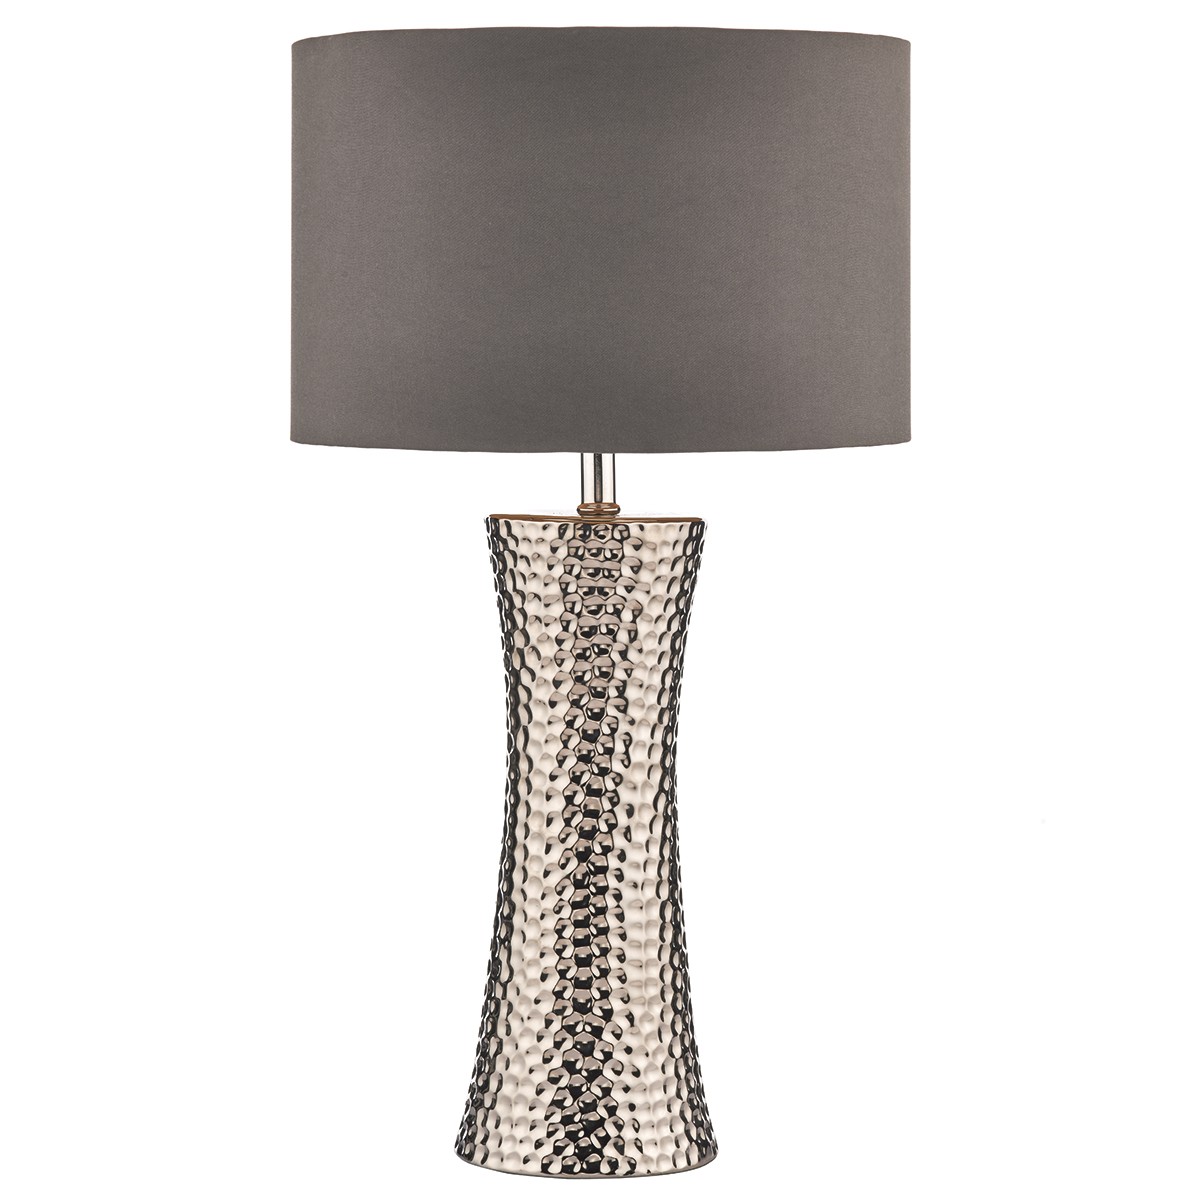 Silver Bokara Table Lamp With Shade, Big Silver Table Lamps